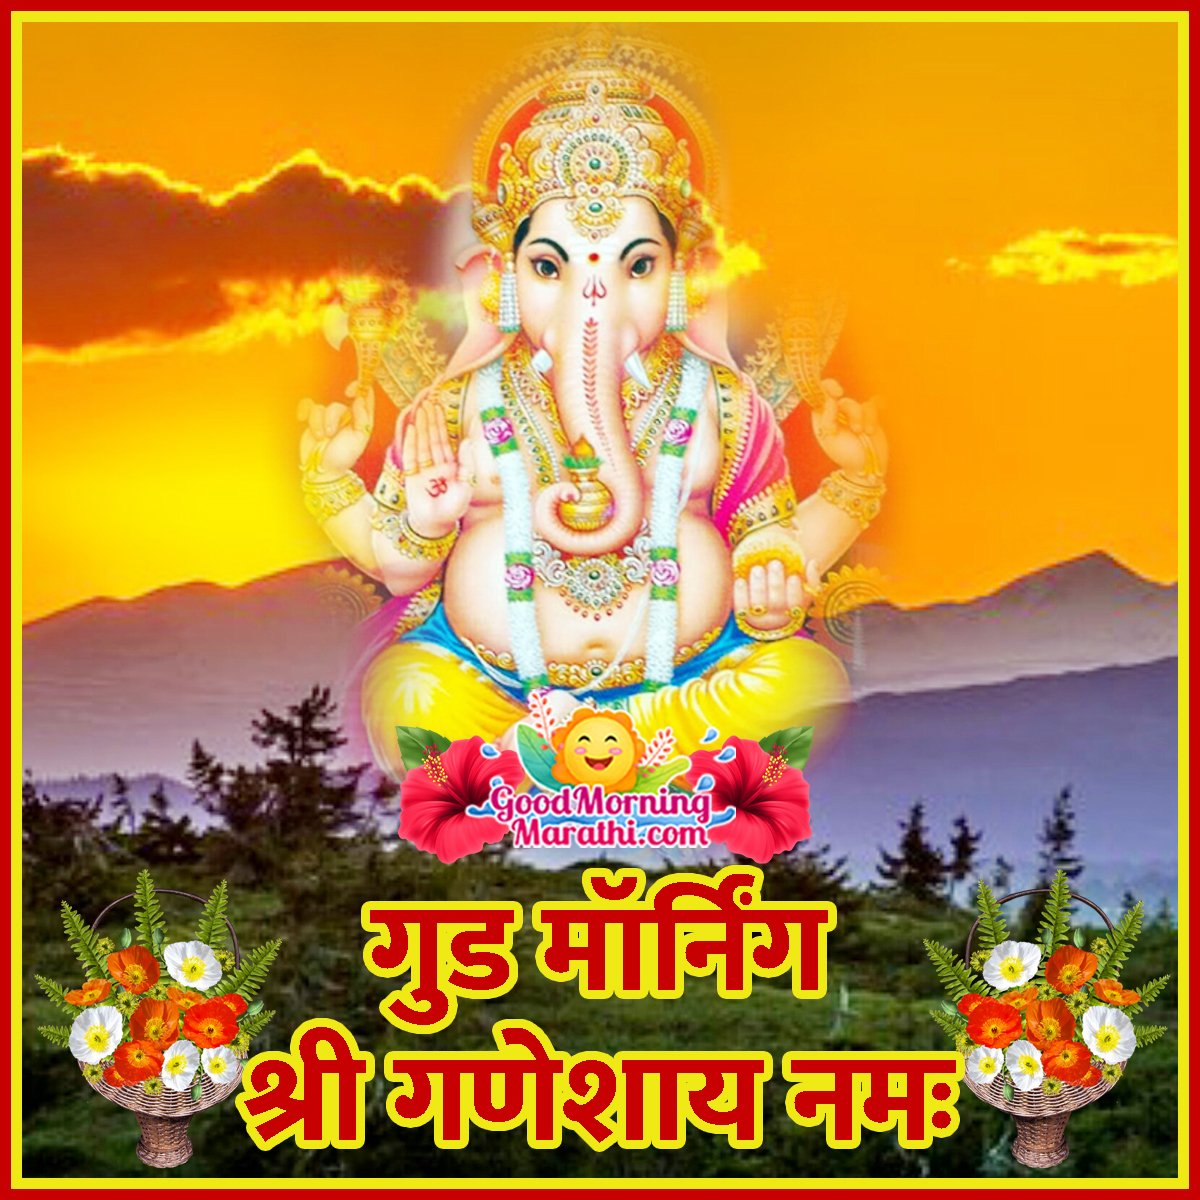 Good Morning Shri Ganeshay Namah Image